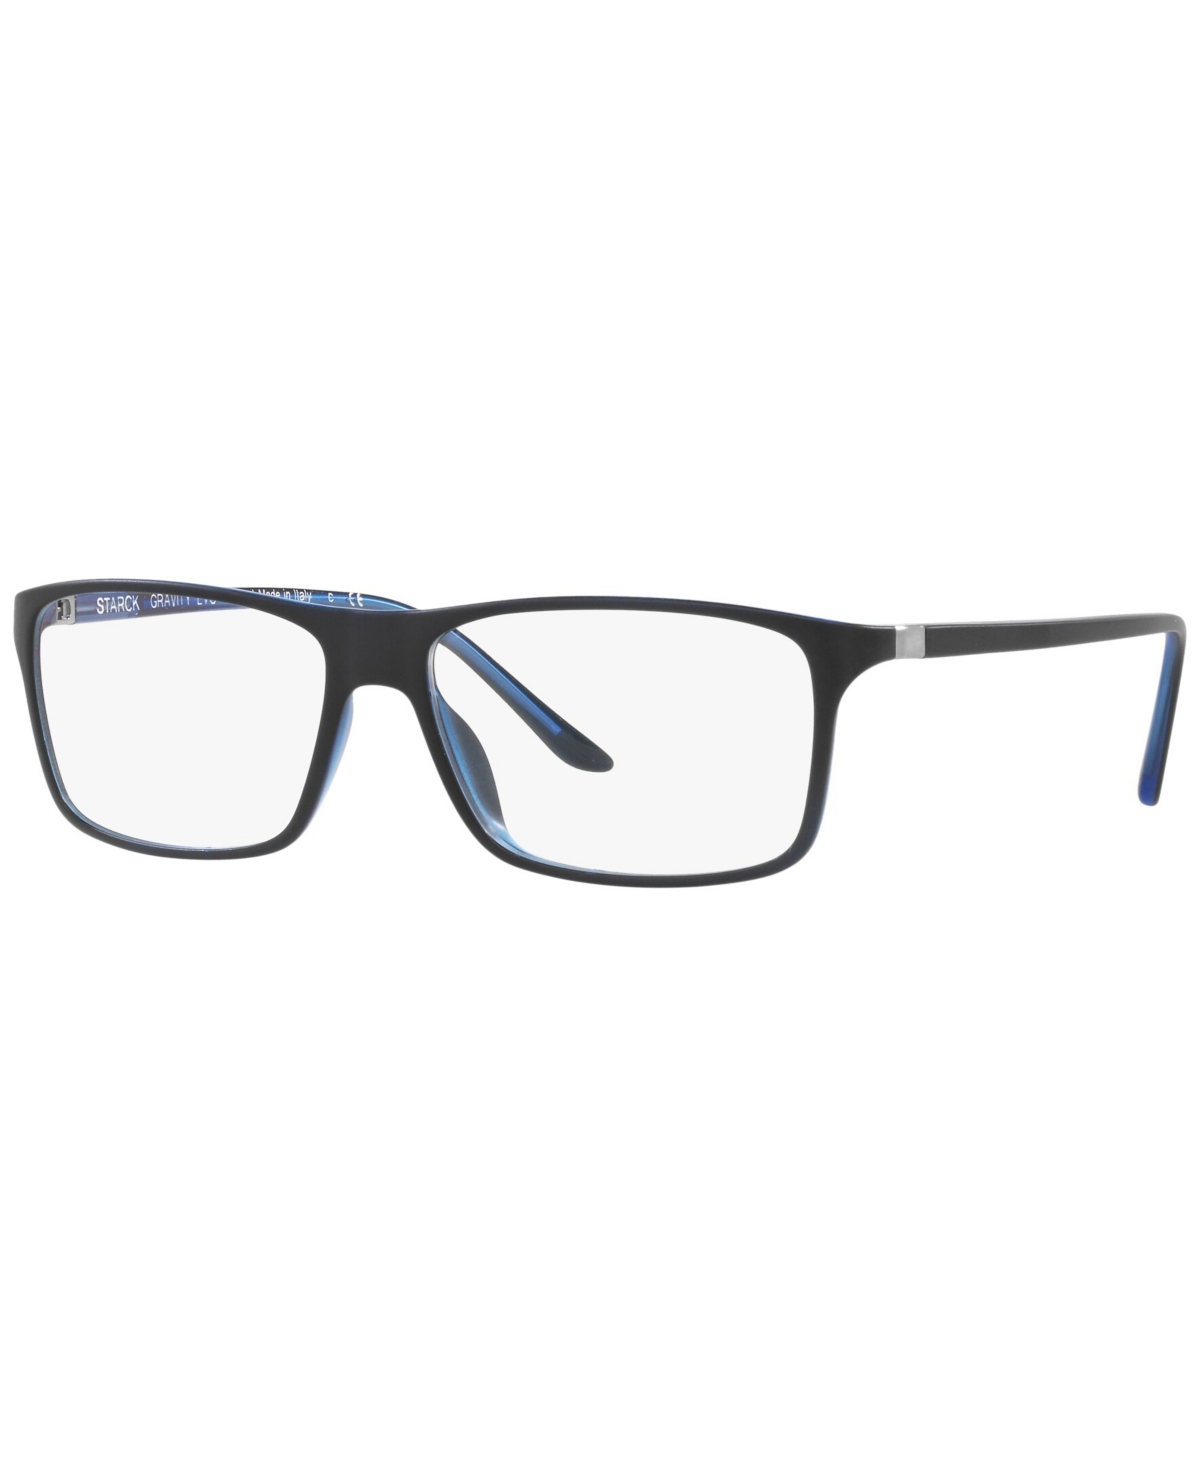 SH1043X Men's Square Eyeglasses - Black, Blue